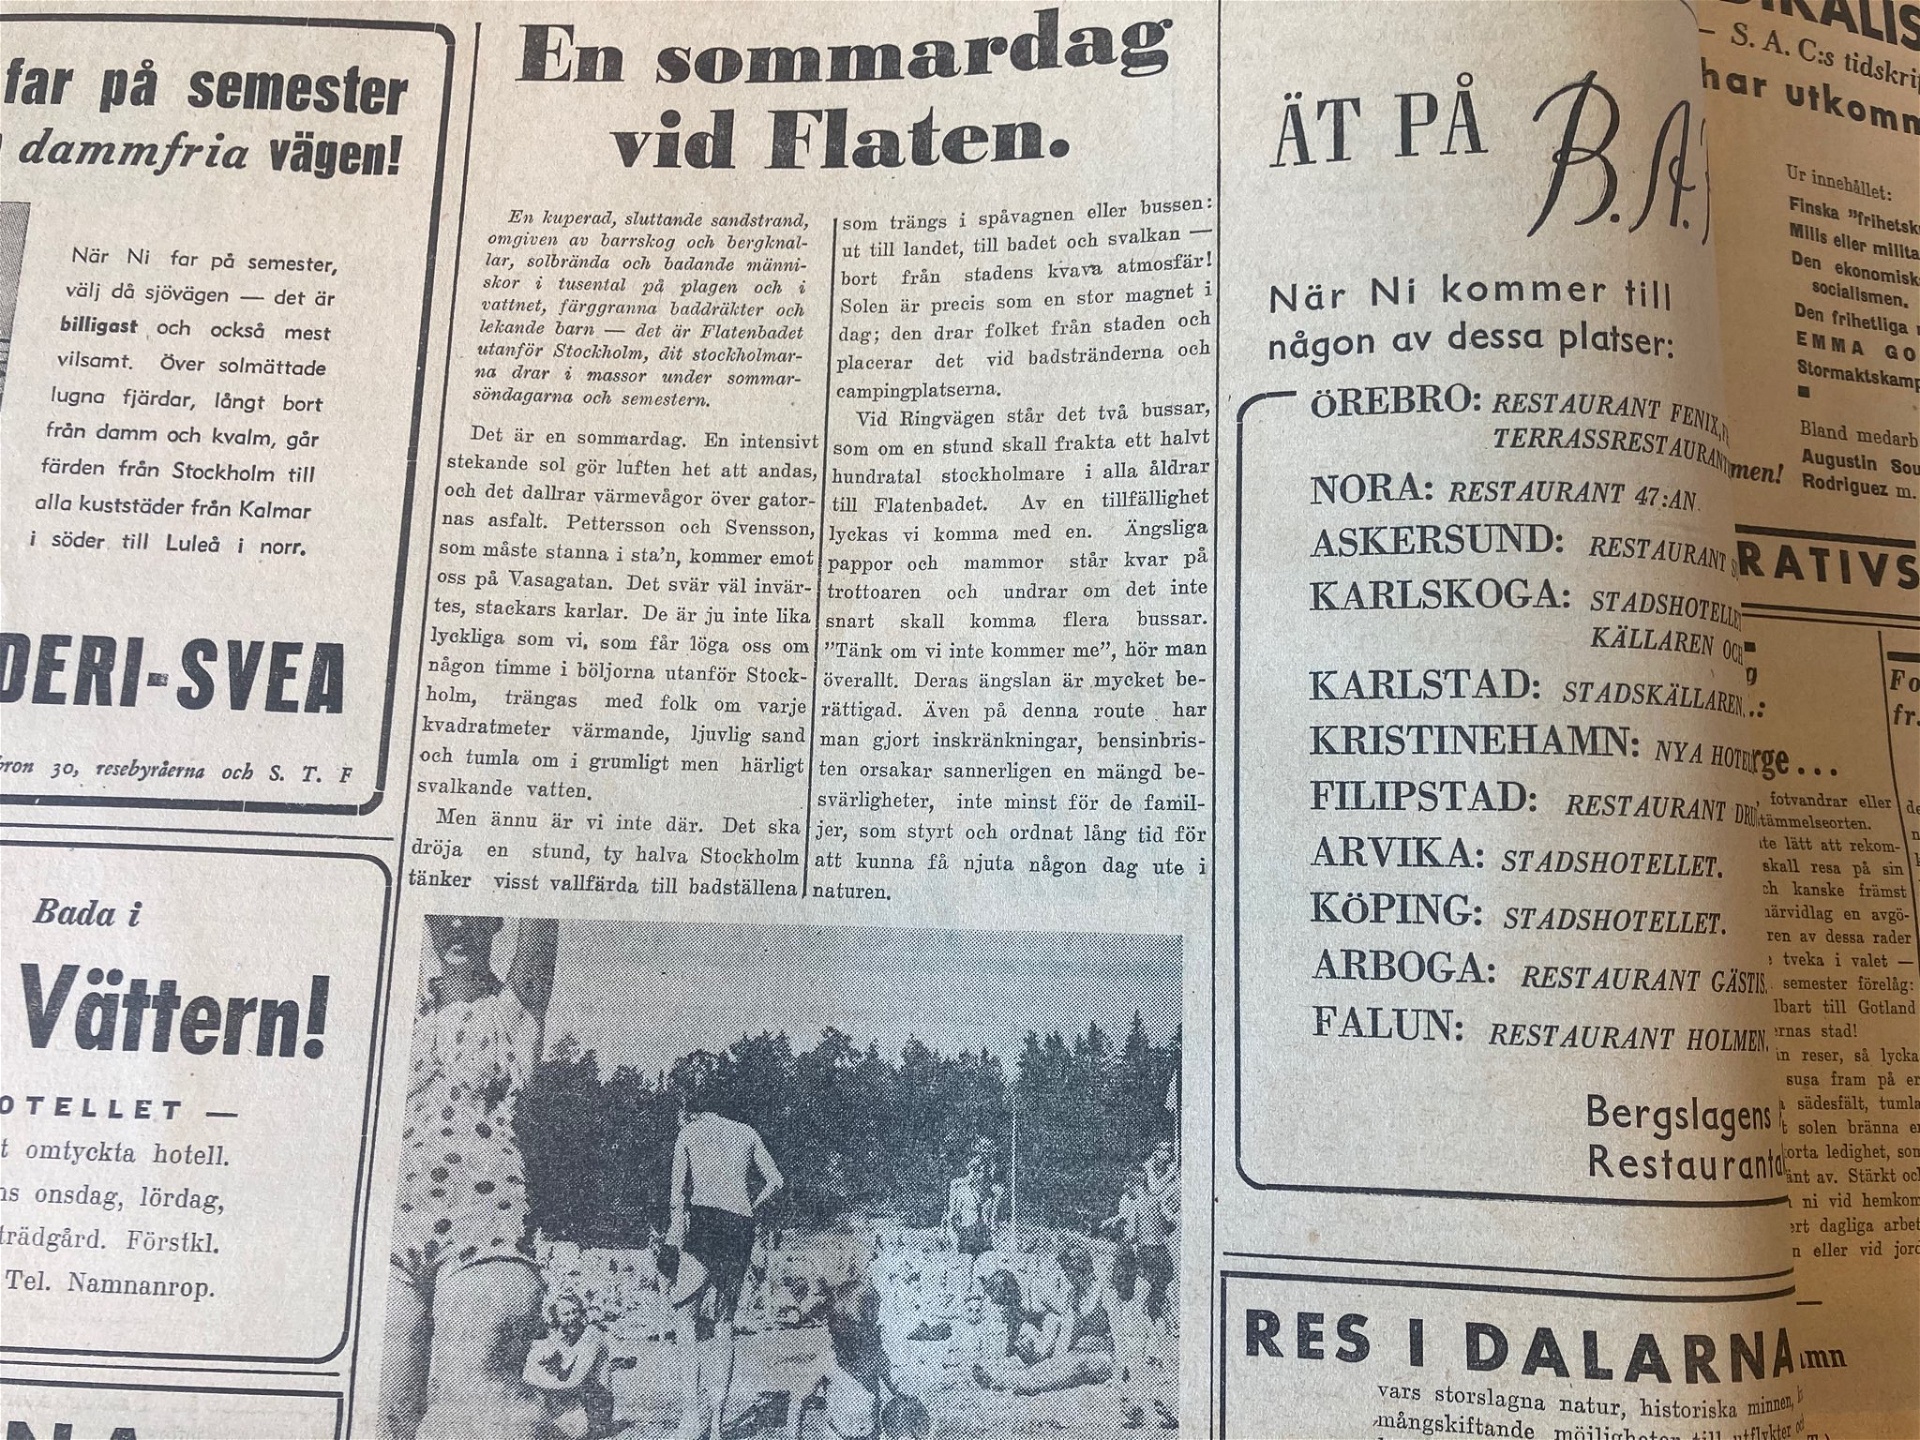 Foto: Arbetaren fredagen den 5 juli 1940Flatenbadet i Stockholm var ett populärt besöksmål sommaren 1940. 